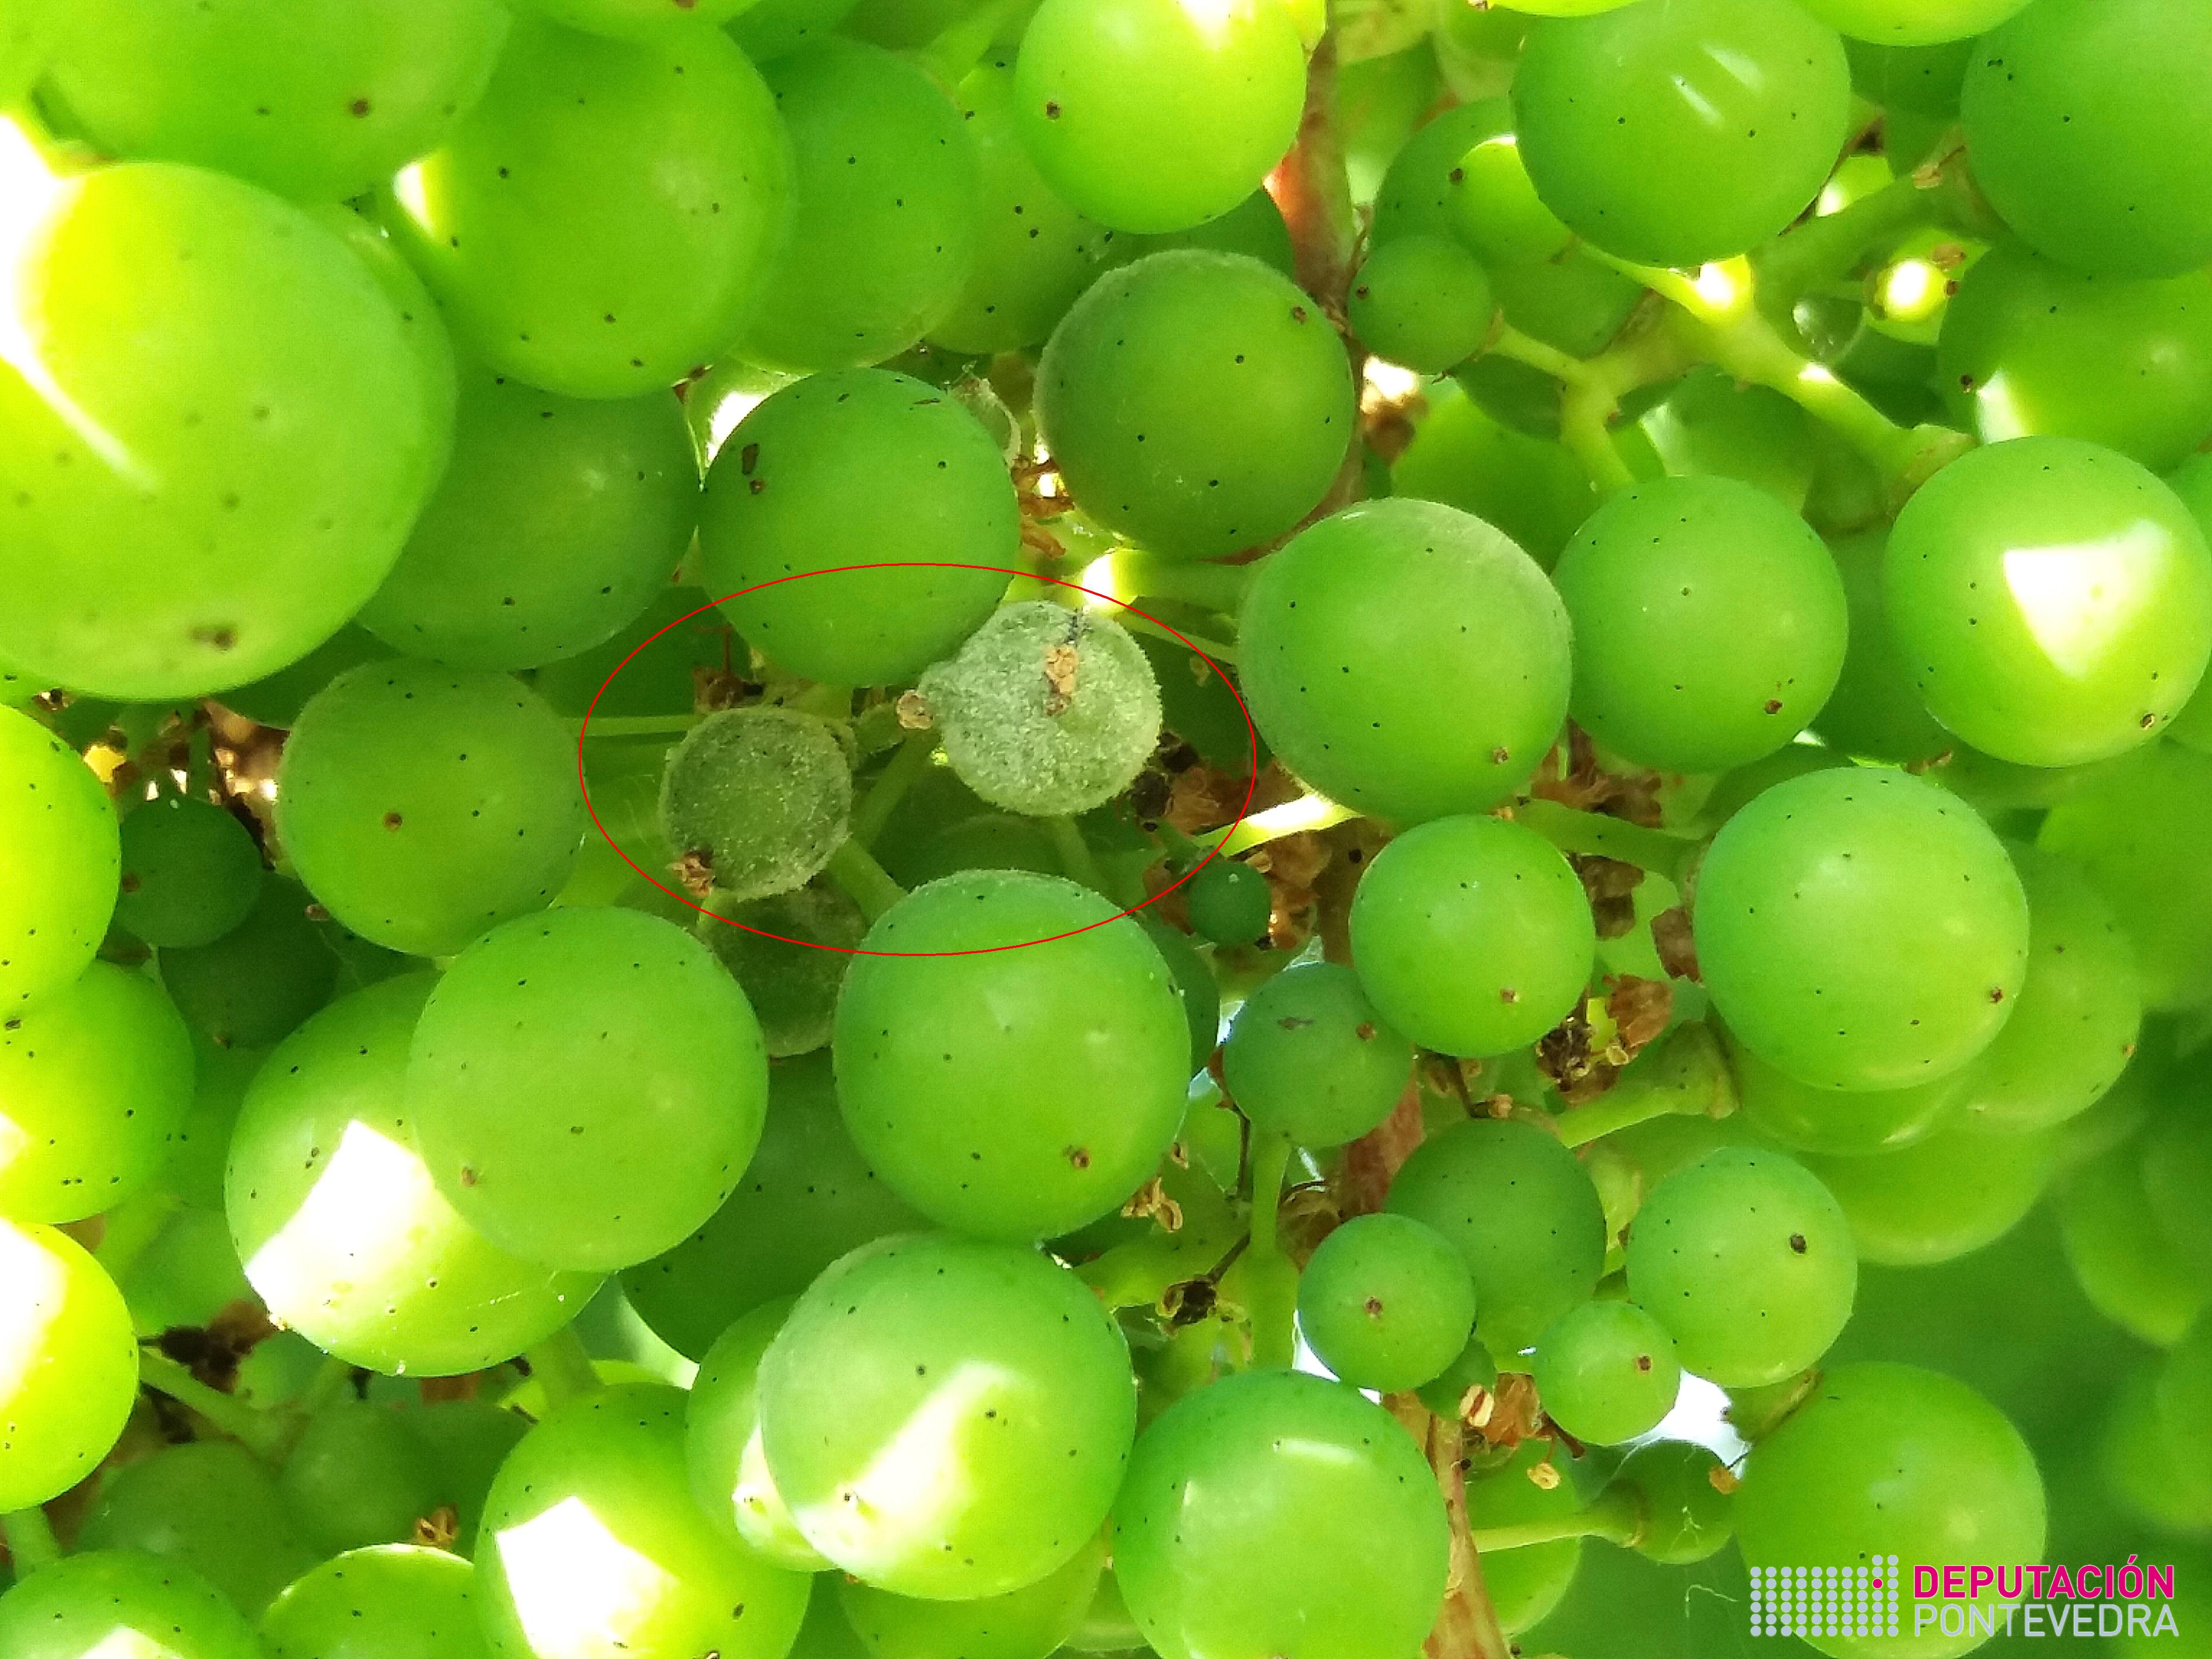 Gran de uva con oidio